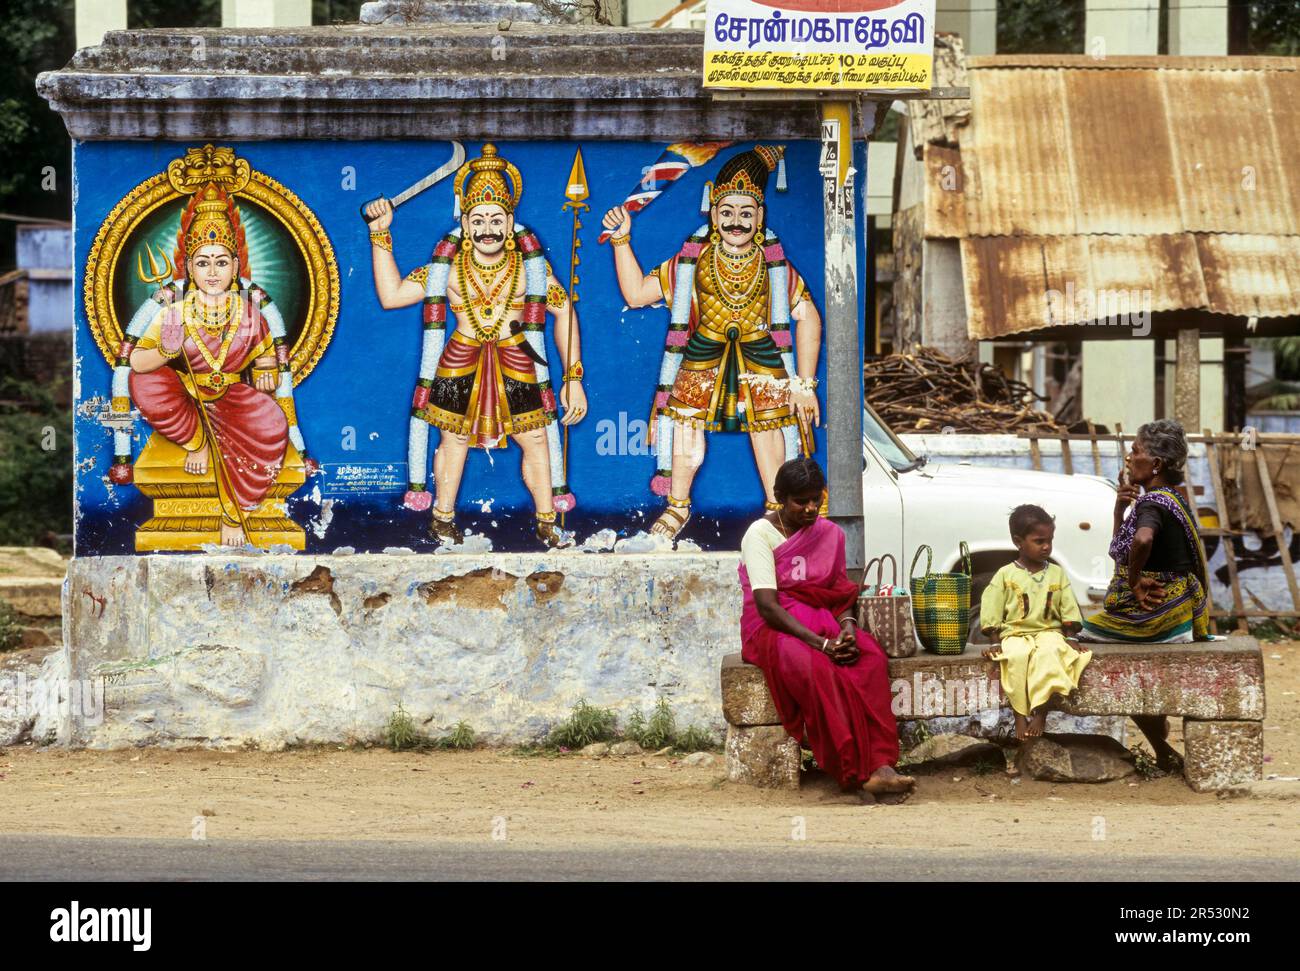 Abitanti del villaggio in attesa di un autobus, seduti su una panchina di pietra a Pathamadai Pattamadai vicino Tirunelveli Thirunelveli, Tamil Nadu, India del Sud, India, Asia Foto Stock